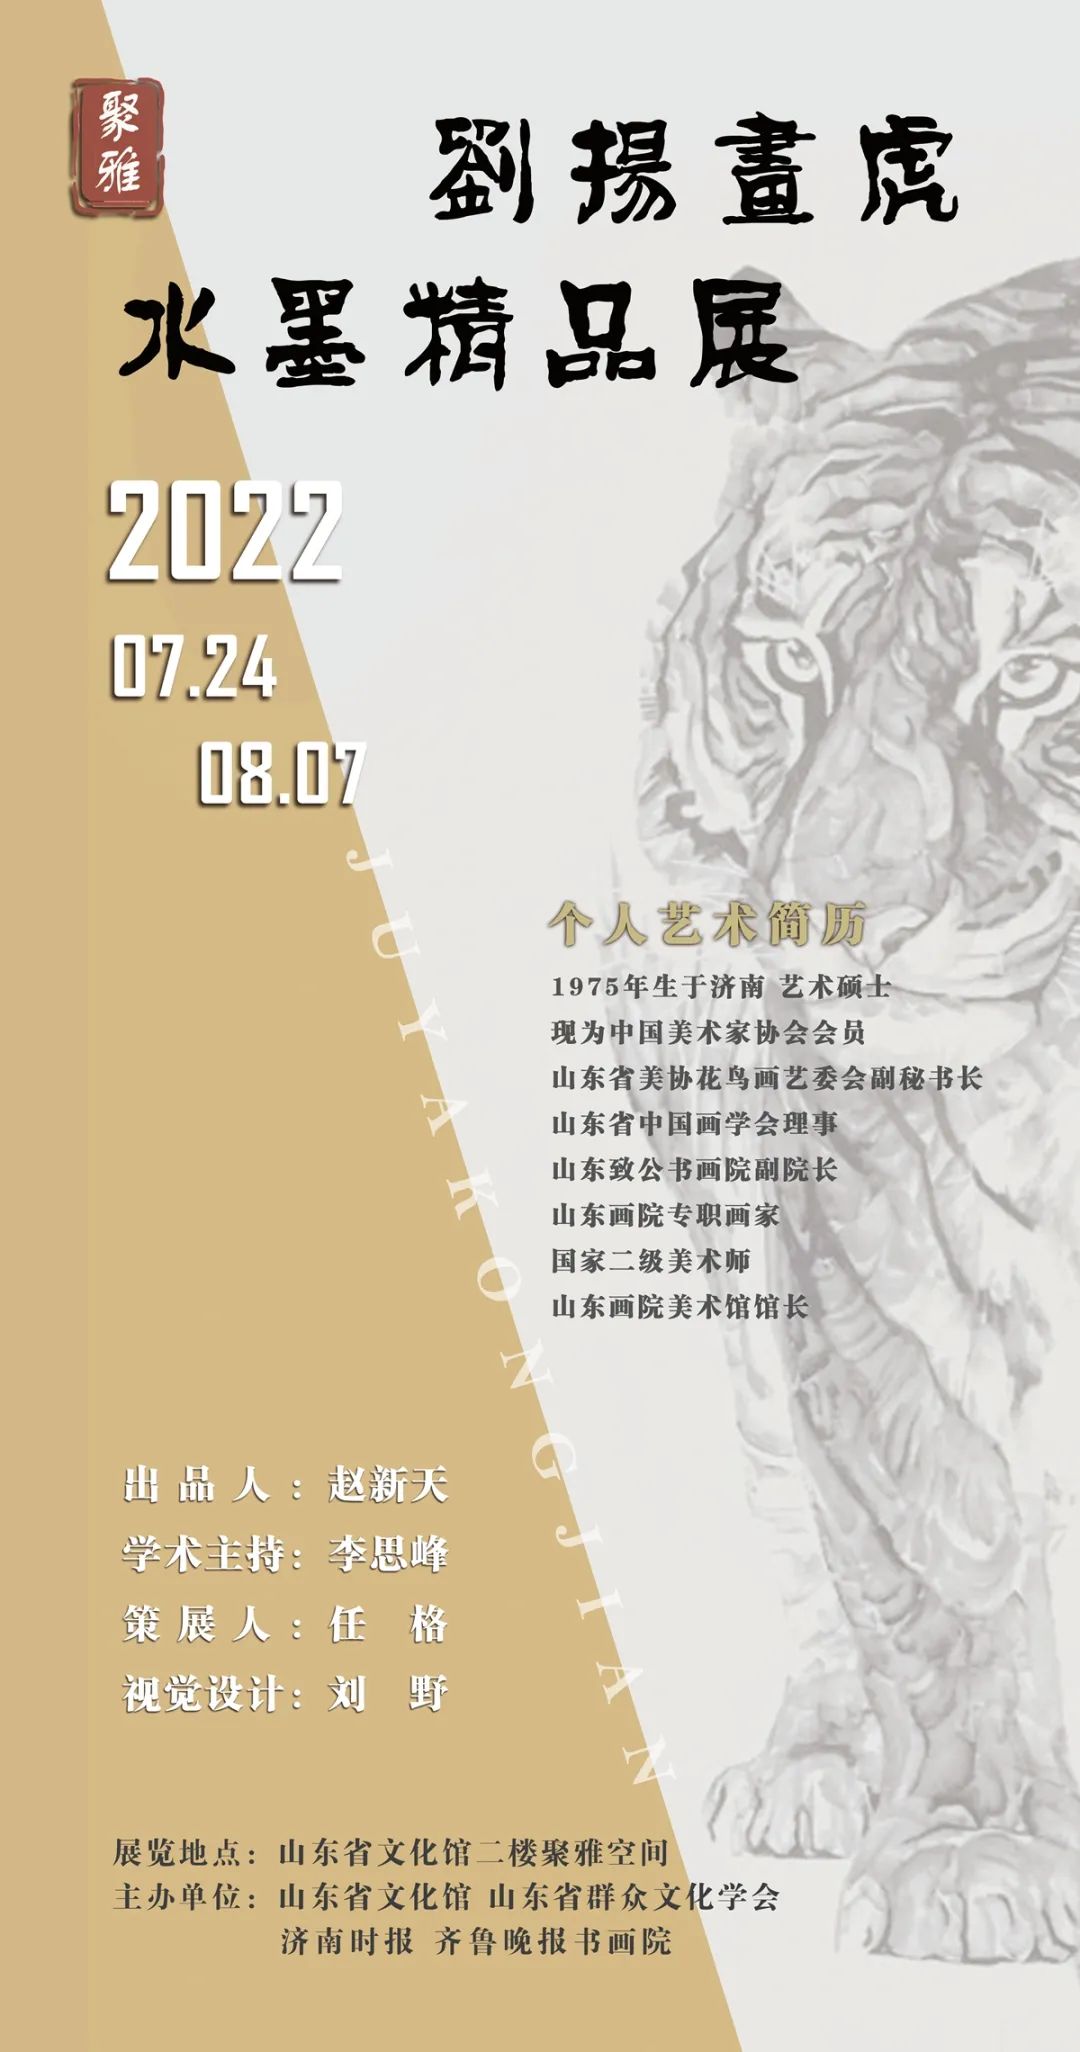 “刘扬画虎——水墨精品展”今日在济南开幕，呈现生命思考与人生感悟